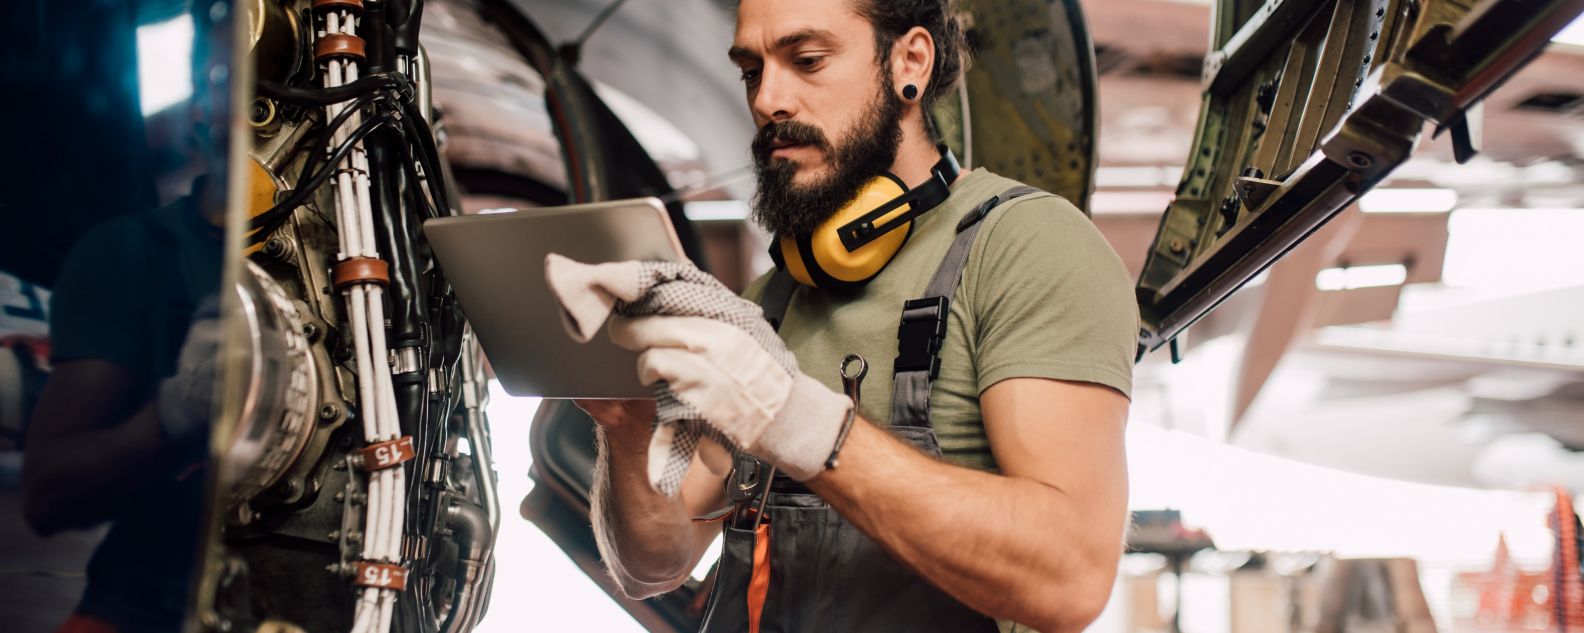 Un hombre usando una tableta digital al reparar un avión